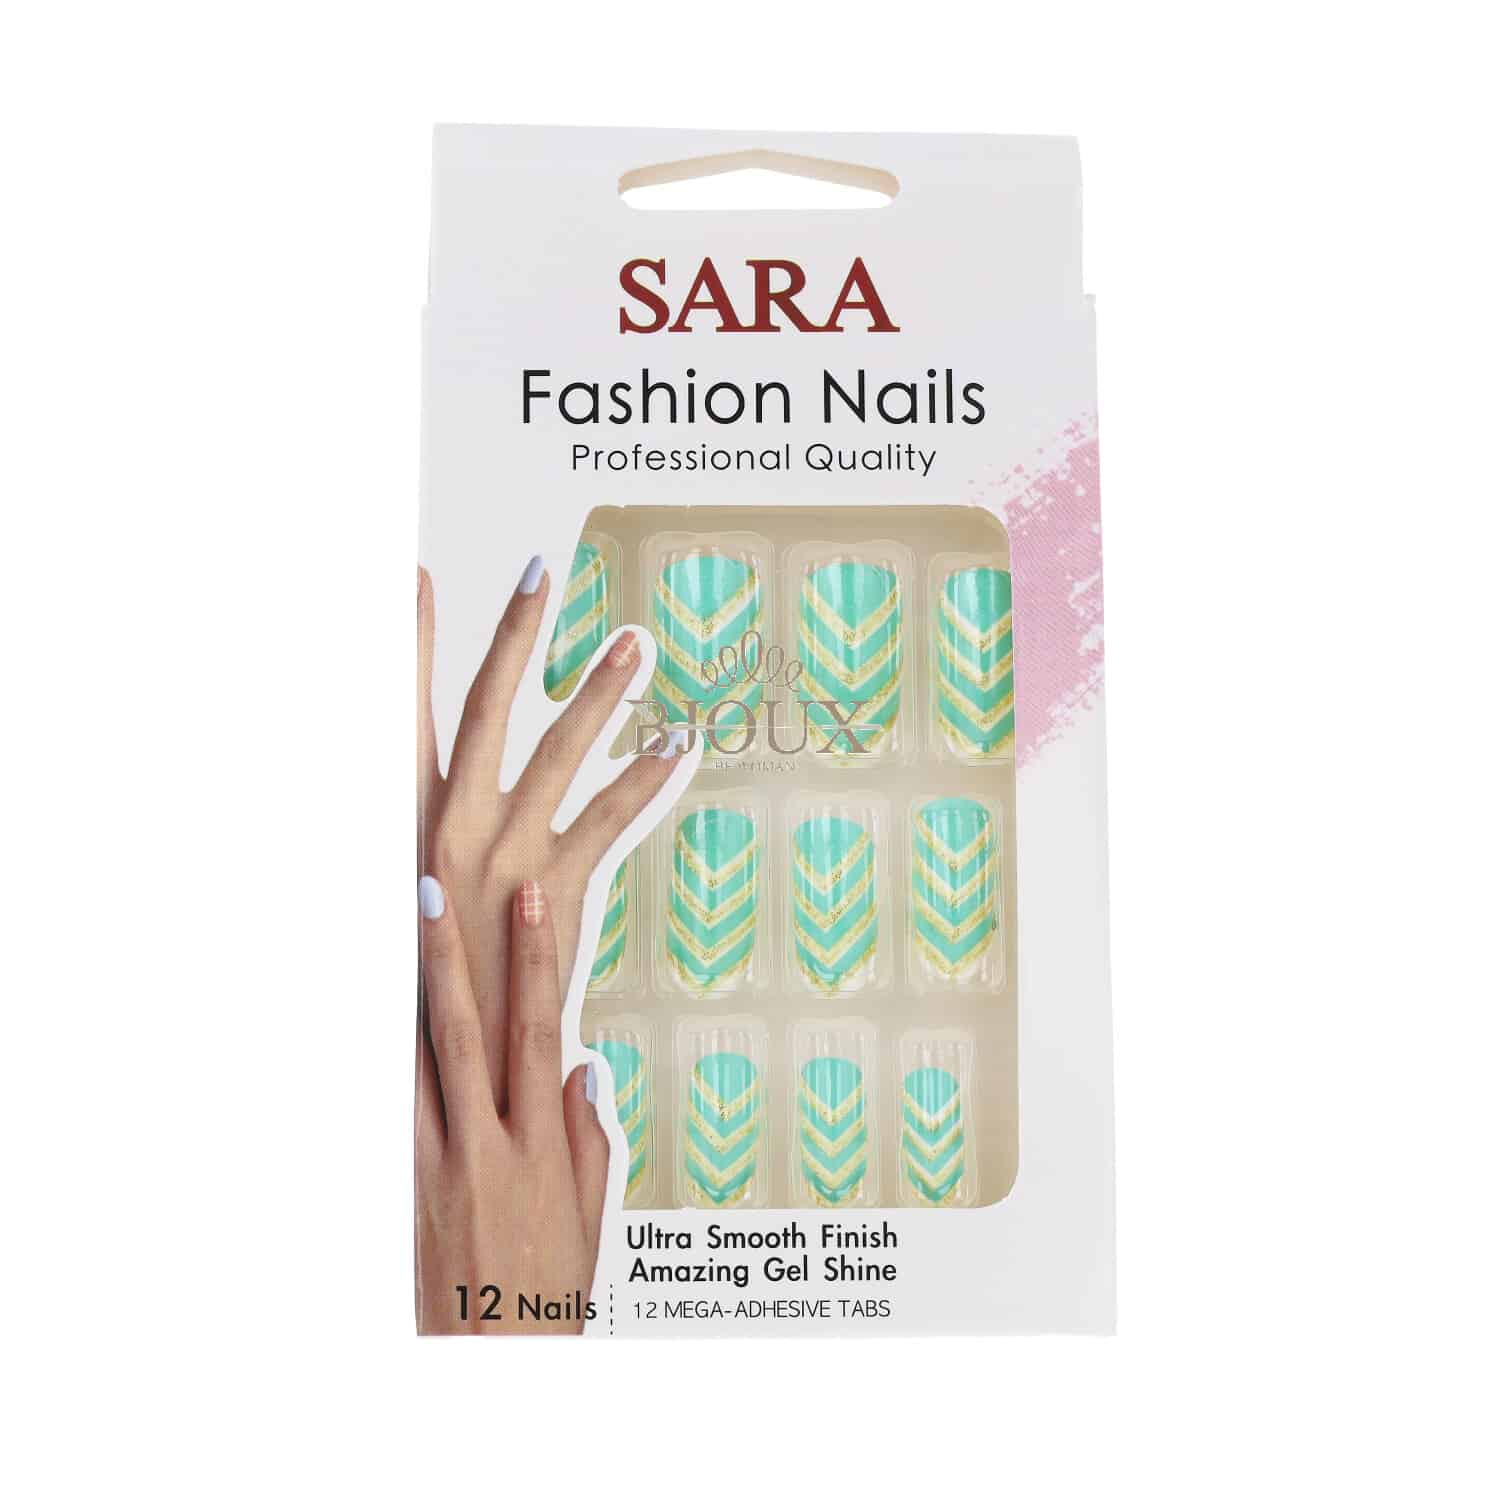 Sara Stick On Nails. | eBay